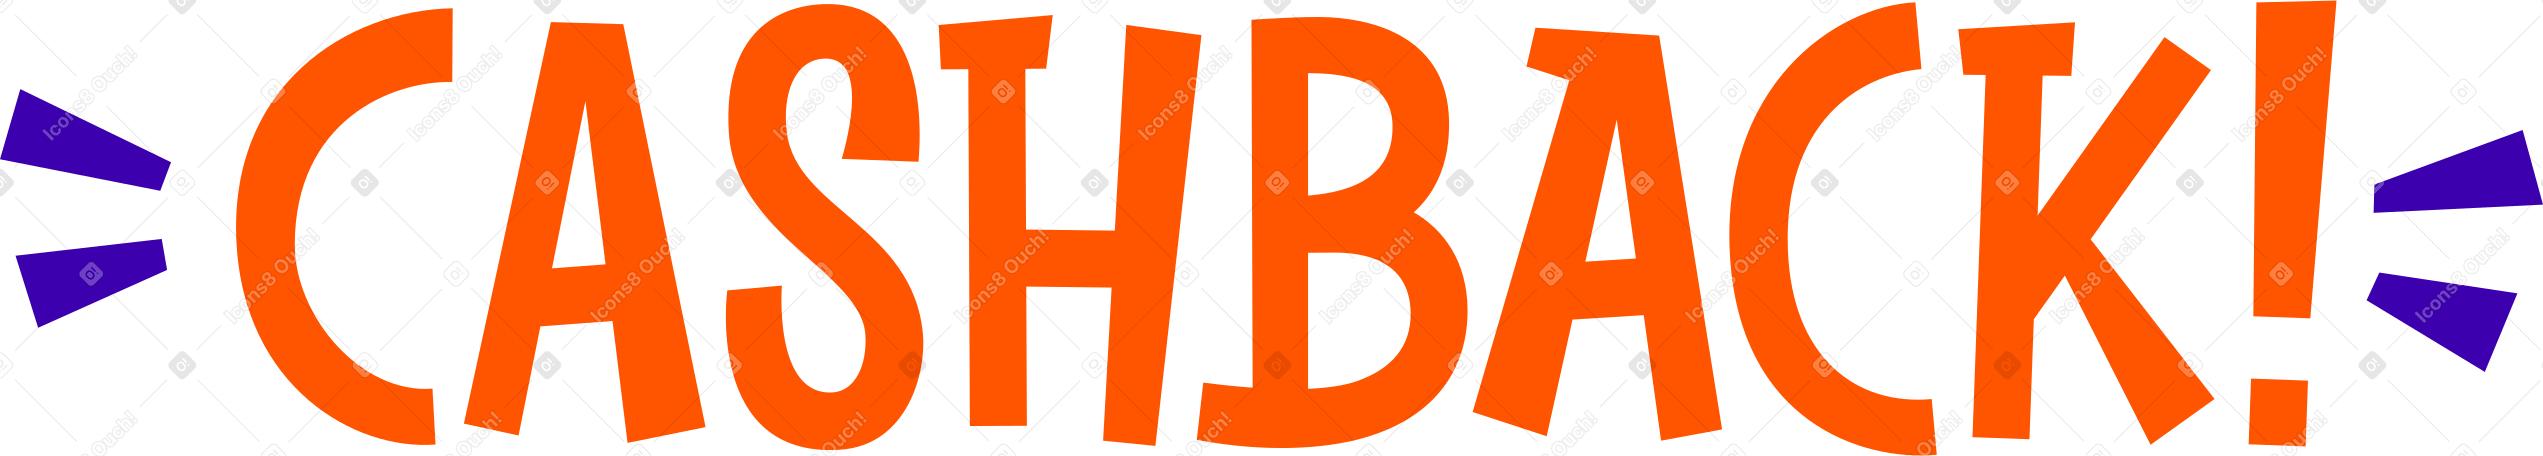 lettering cashback orange Illustration in PNG, SVG